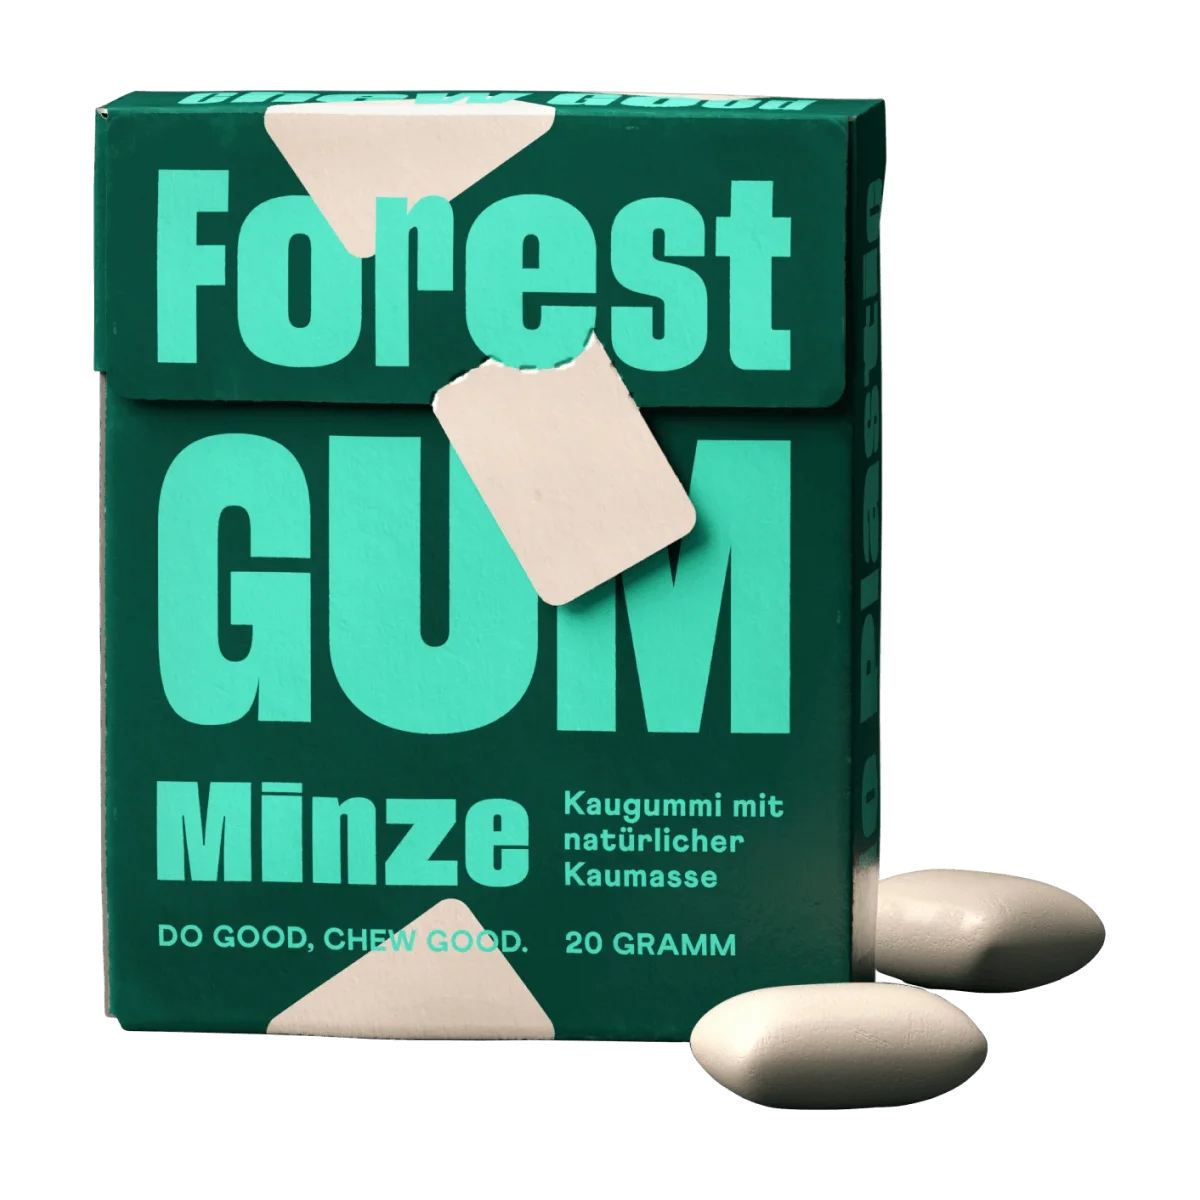 Forest GUM Kaugummi, Minze, zuckerfrei (10 Stück), 20 g